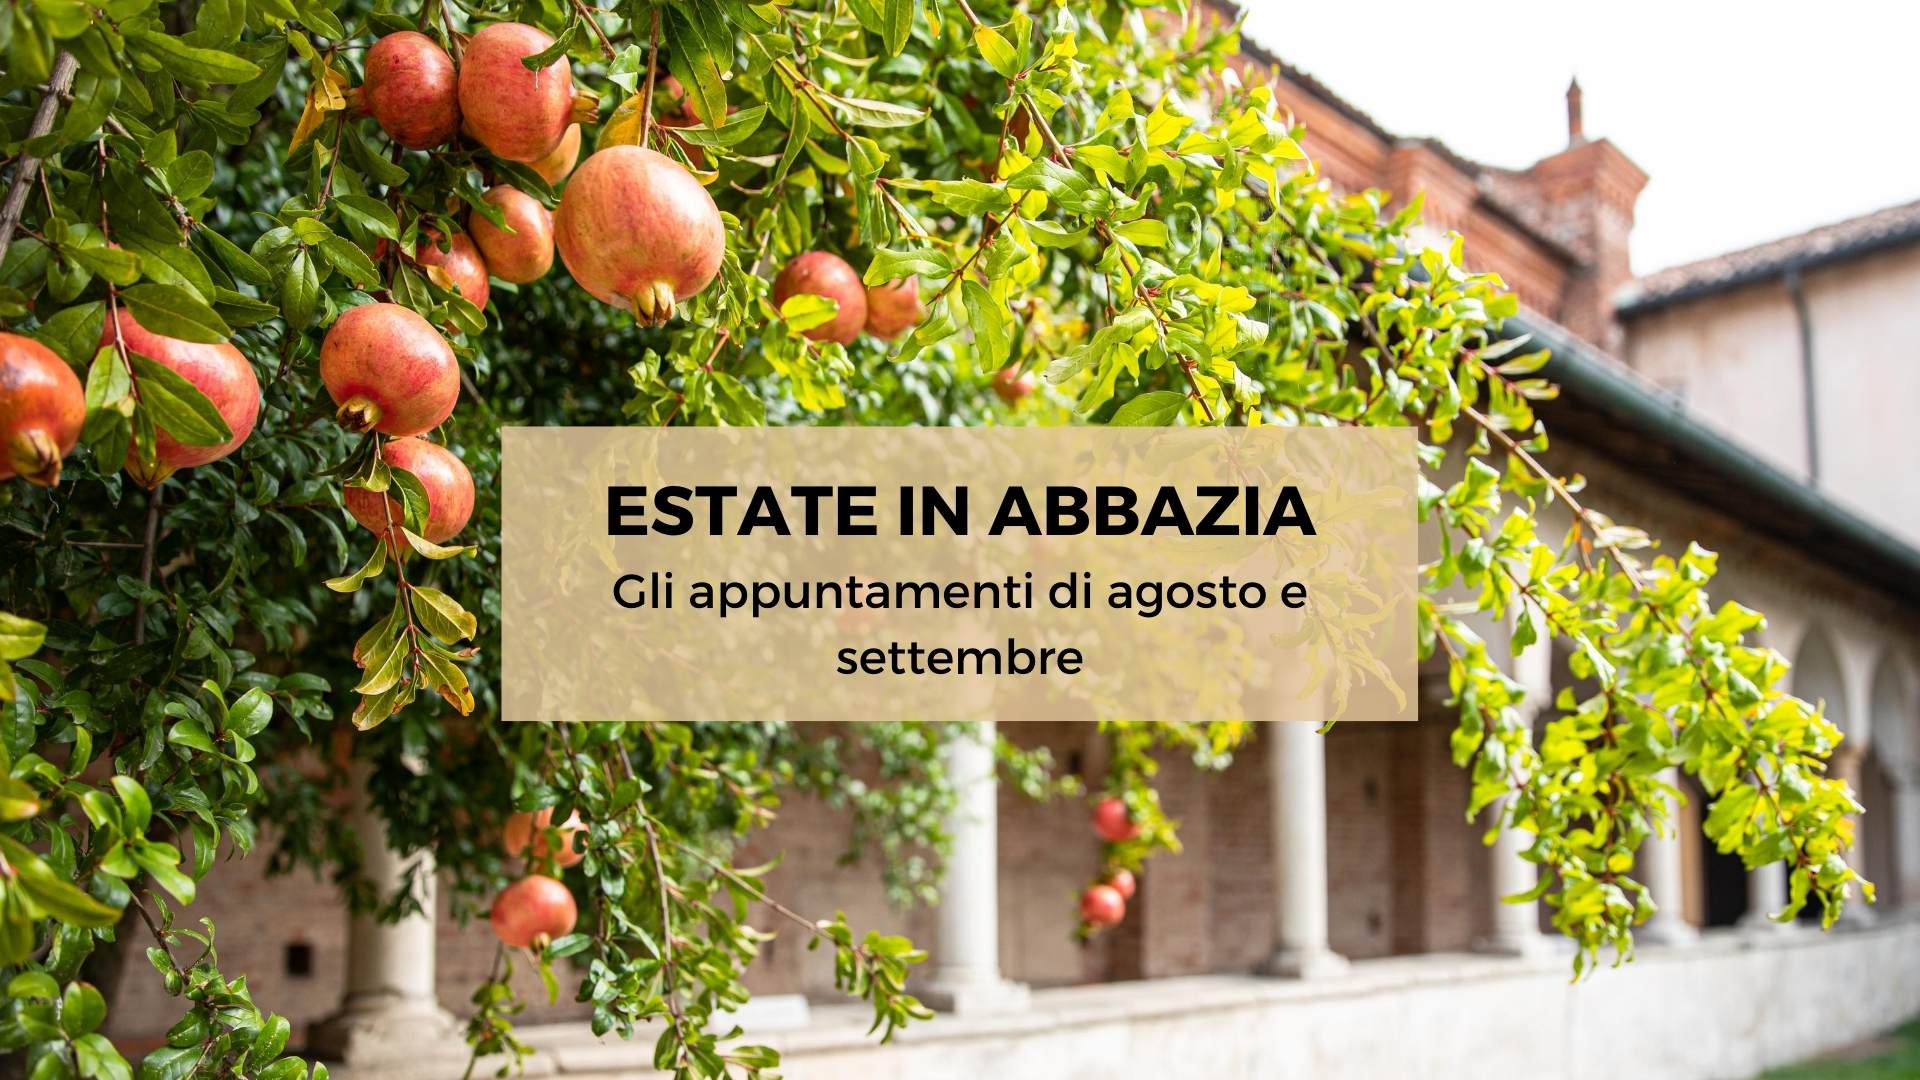 Al momento stai visualizzando Estate in Abbazia: gli appuntamenti di agosto e settembre